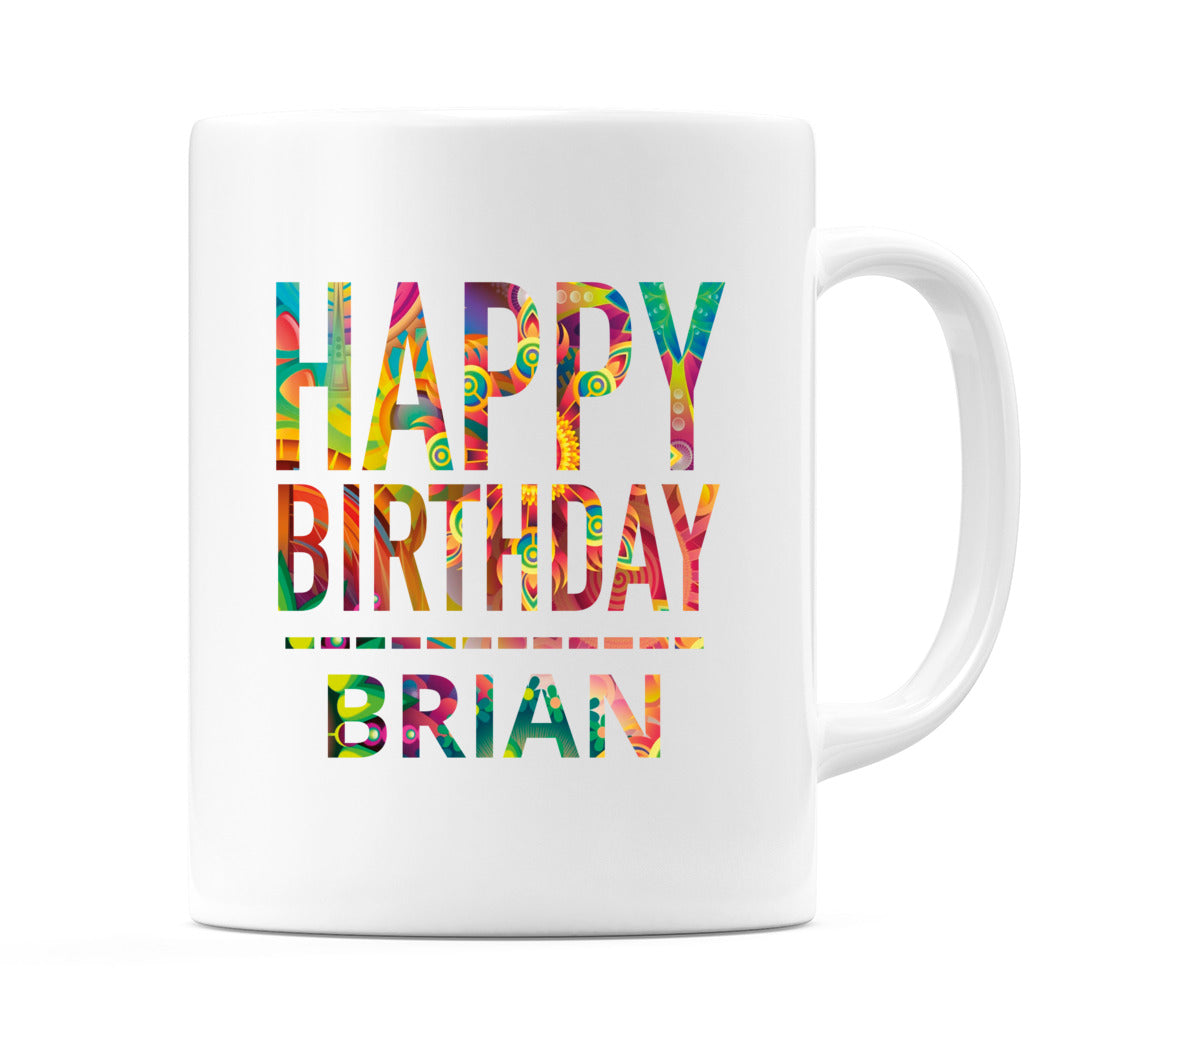 Happy Birthday Brian (Tie Dye Effect) Mug Cup by WeDoMugs